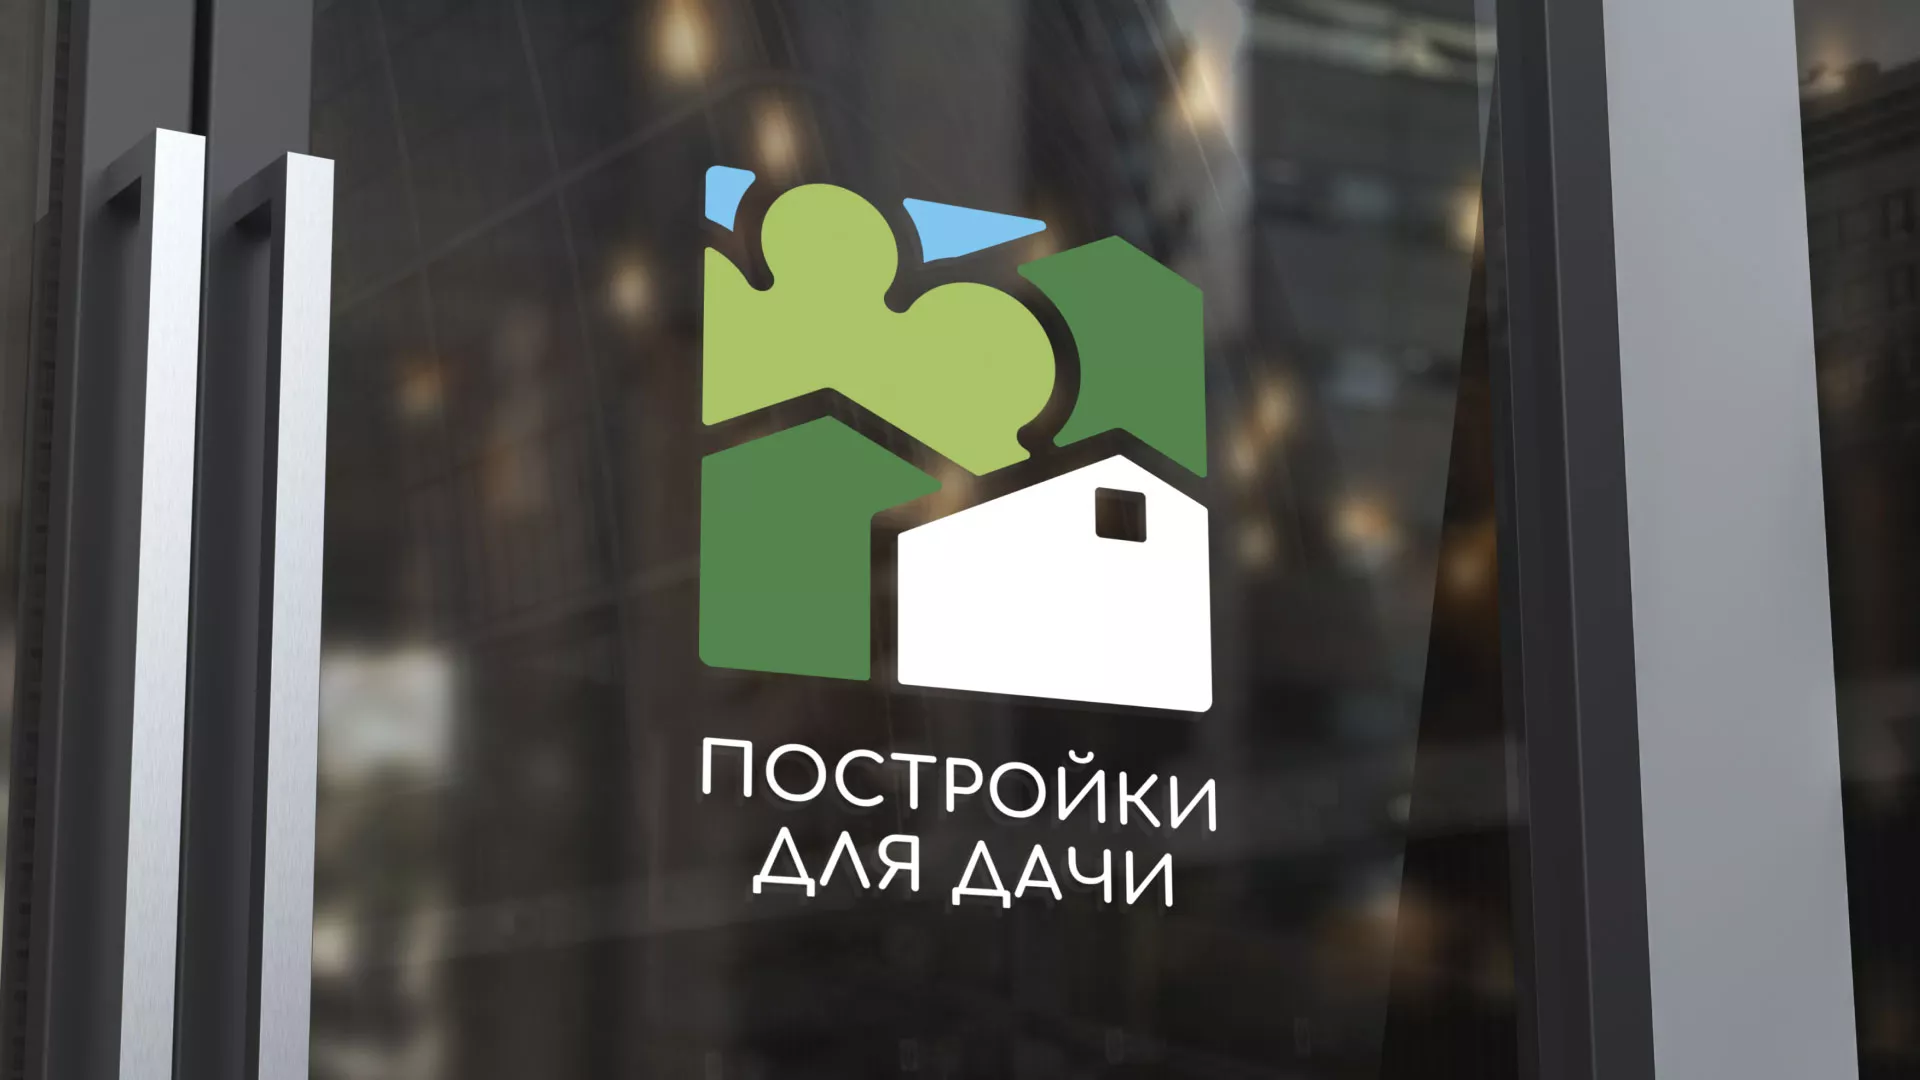 Разработка логотипа в Буйнакске для компании «Постройки для дачи»